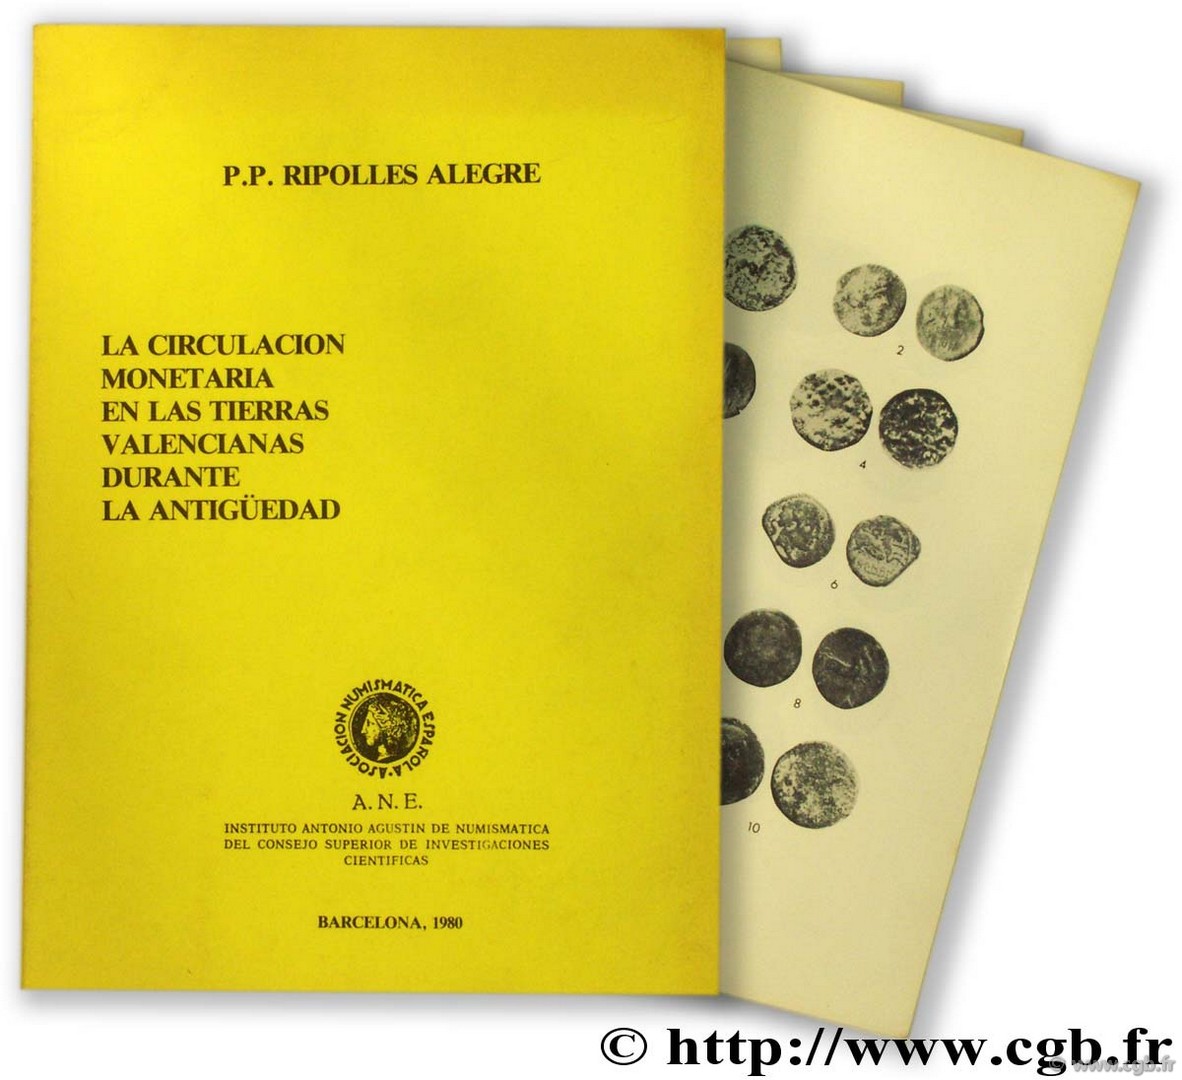 La circulacion monetaria en las tierras valencianas durante la Antigüedad RIPOLLES ALEGRE P.